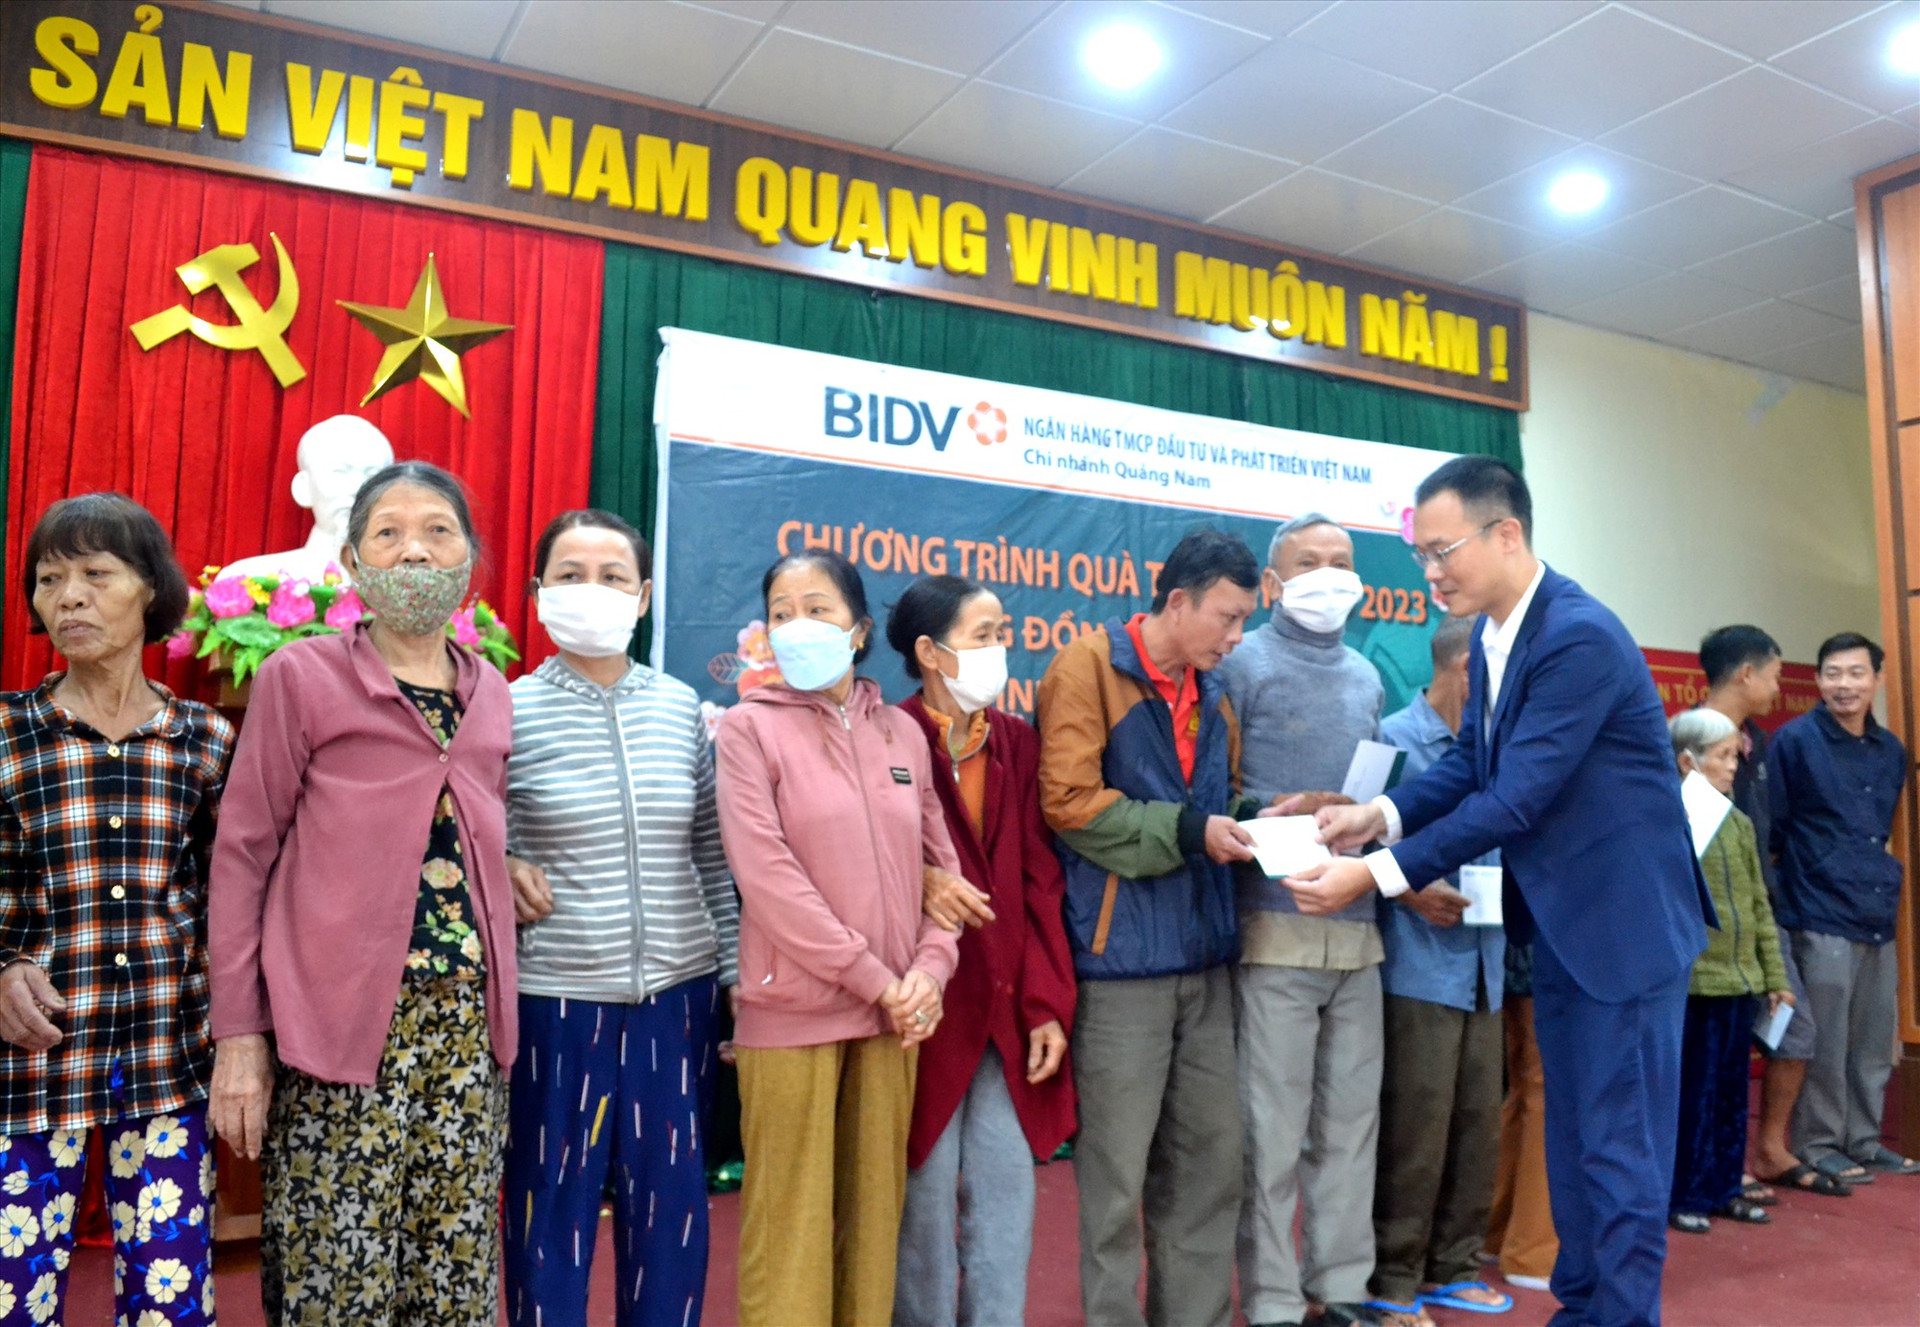 Ông Phạm Minh Tri - Phó Giám đốc BIDV Quảng Nam trao tặng quà tết đến người dân TP.Tam Kỳ. Ảnh: Q.VIỆT